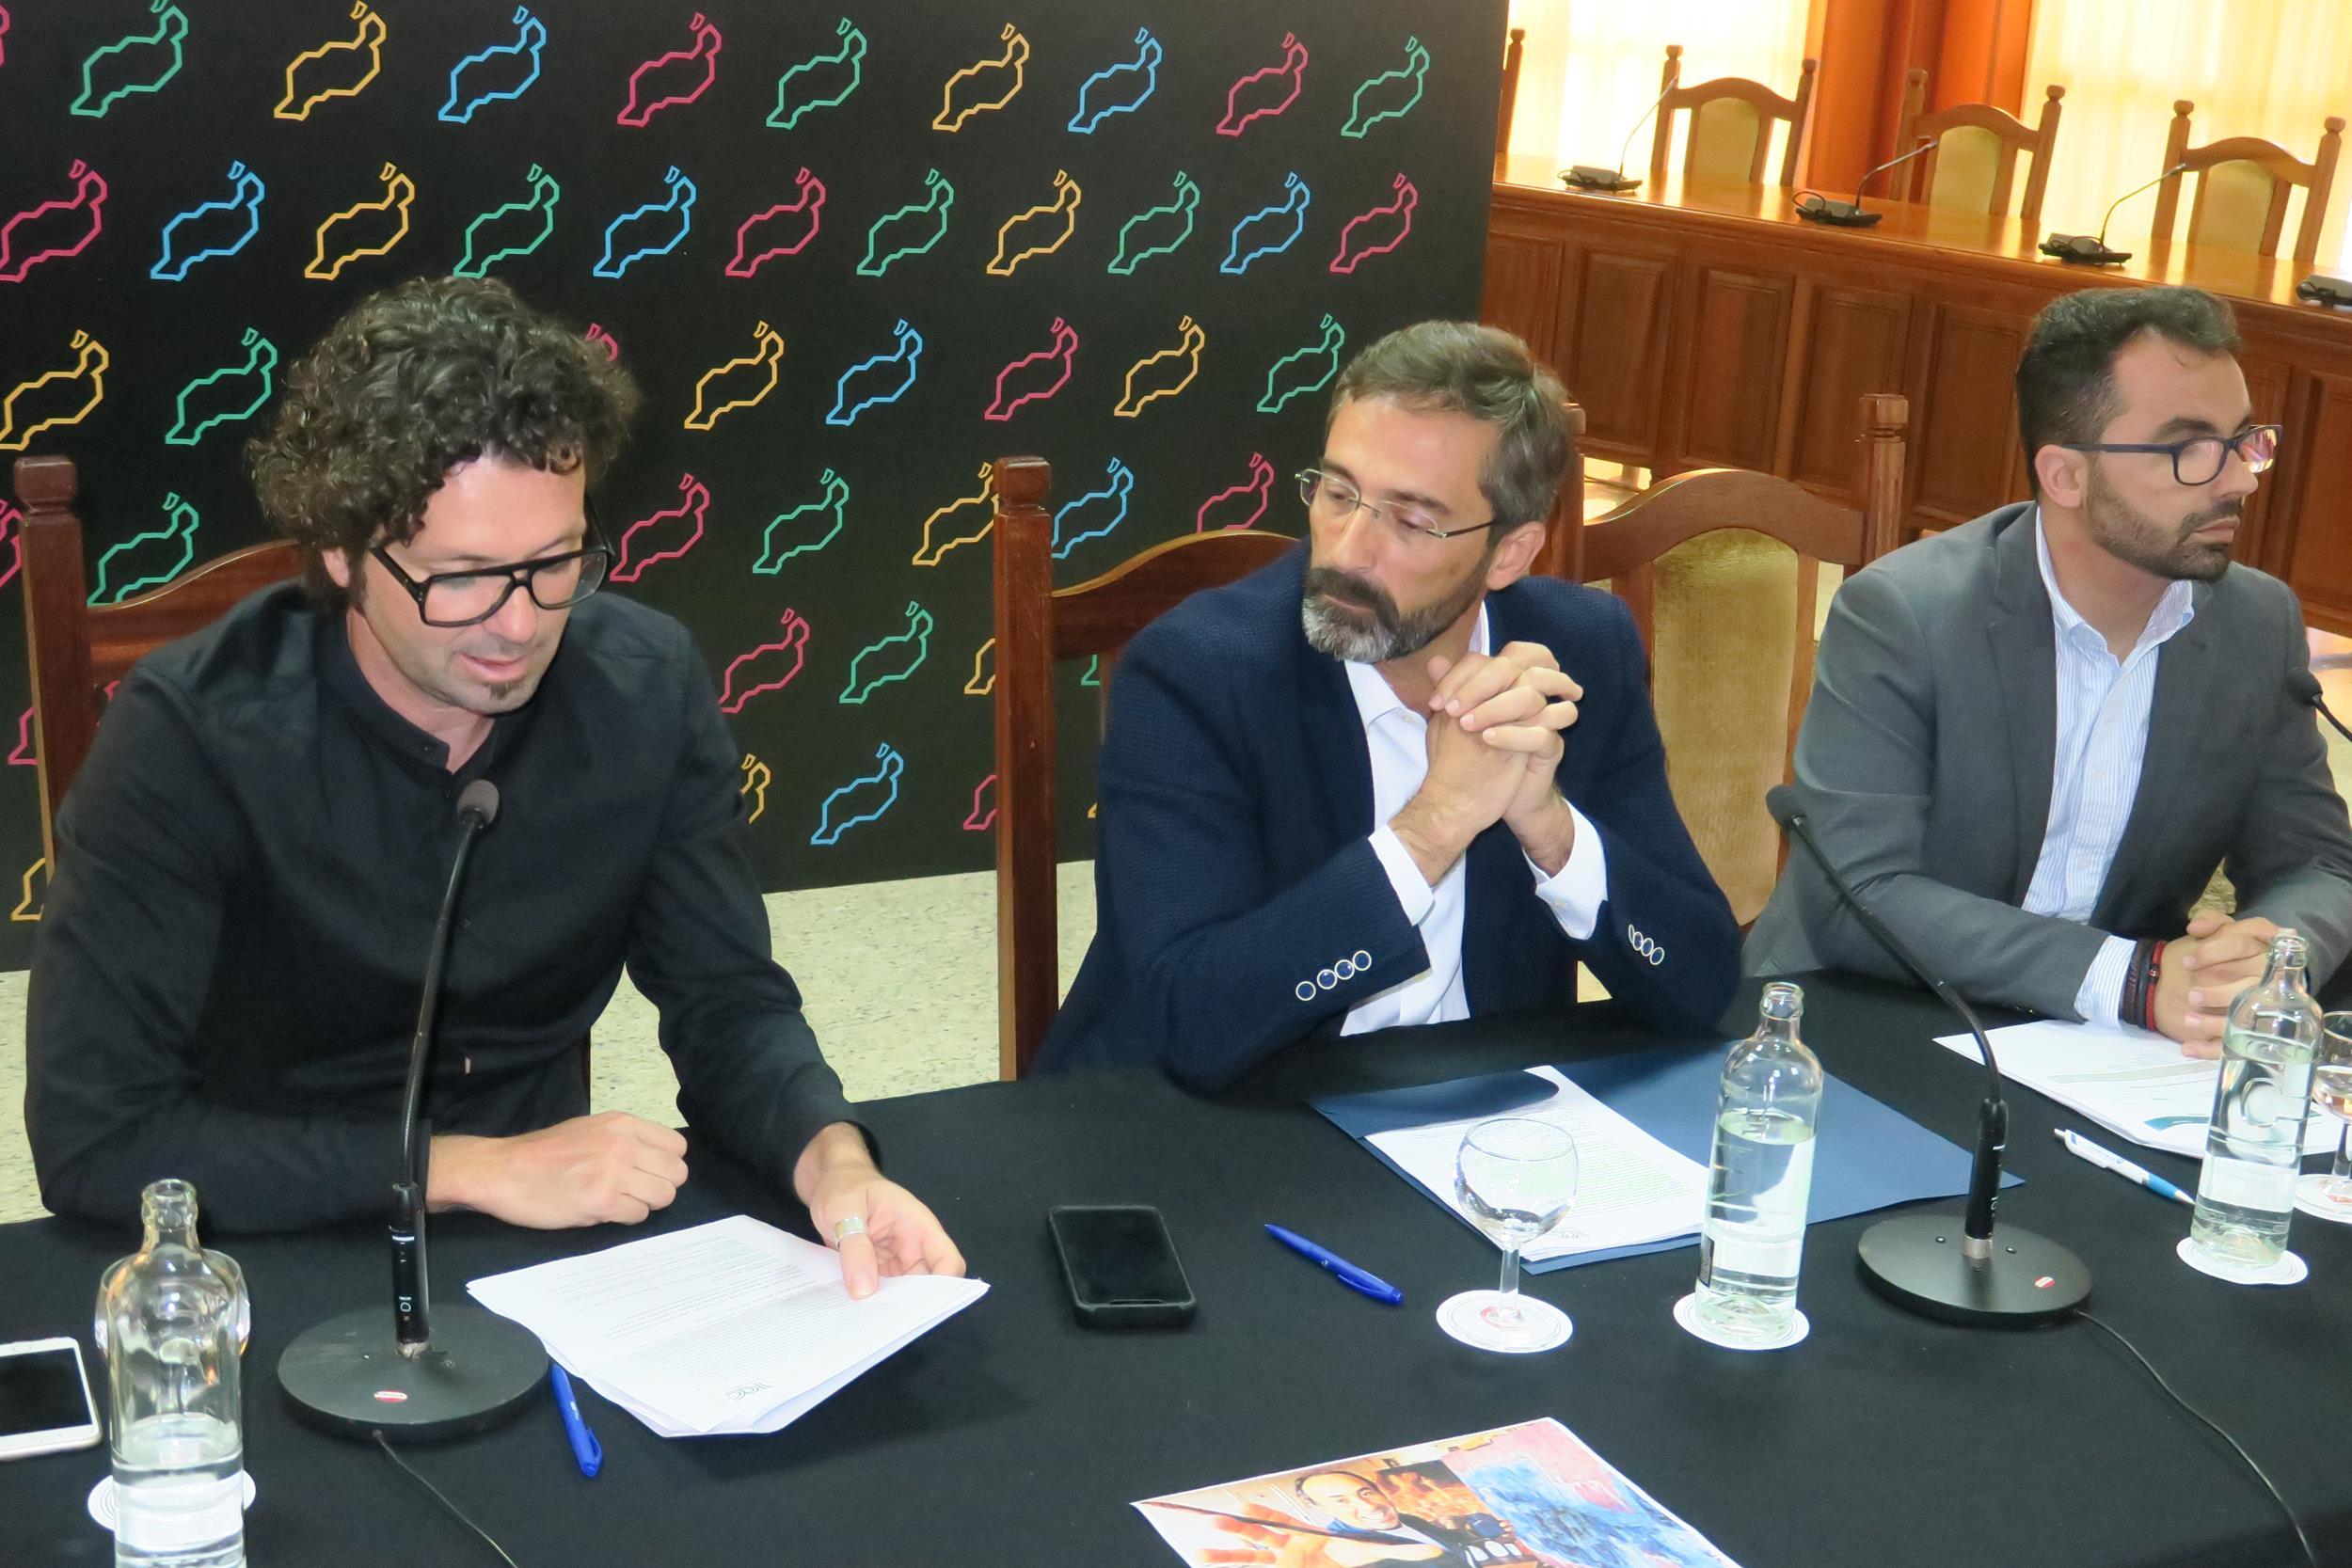 Presentación de las propuestas ciudadanas, de edición, artes escénicas y exposiciones organizadas por el Cabildo de Lanzarote